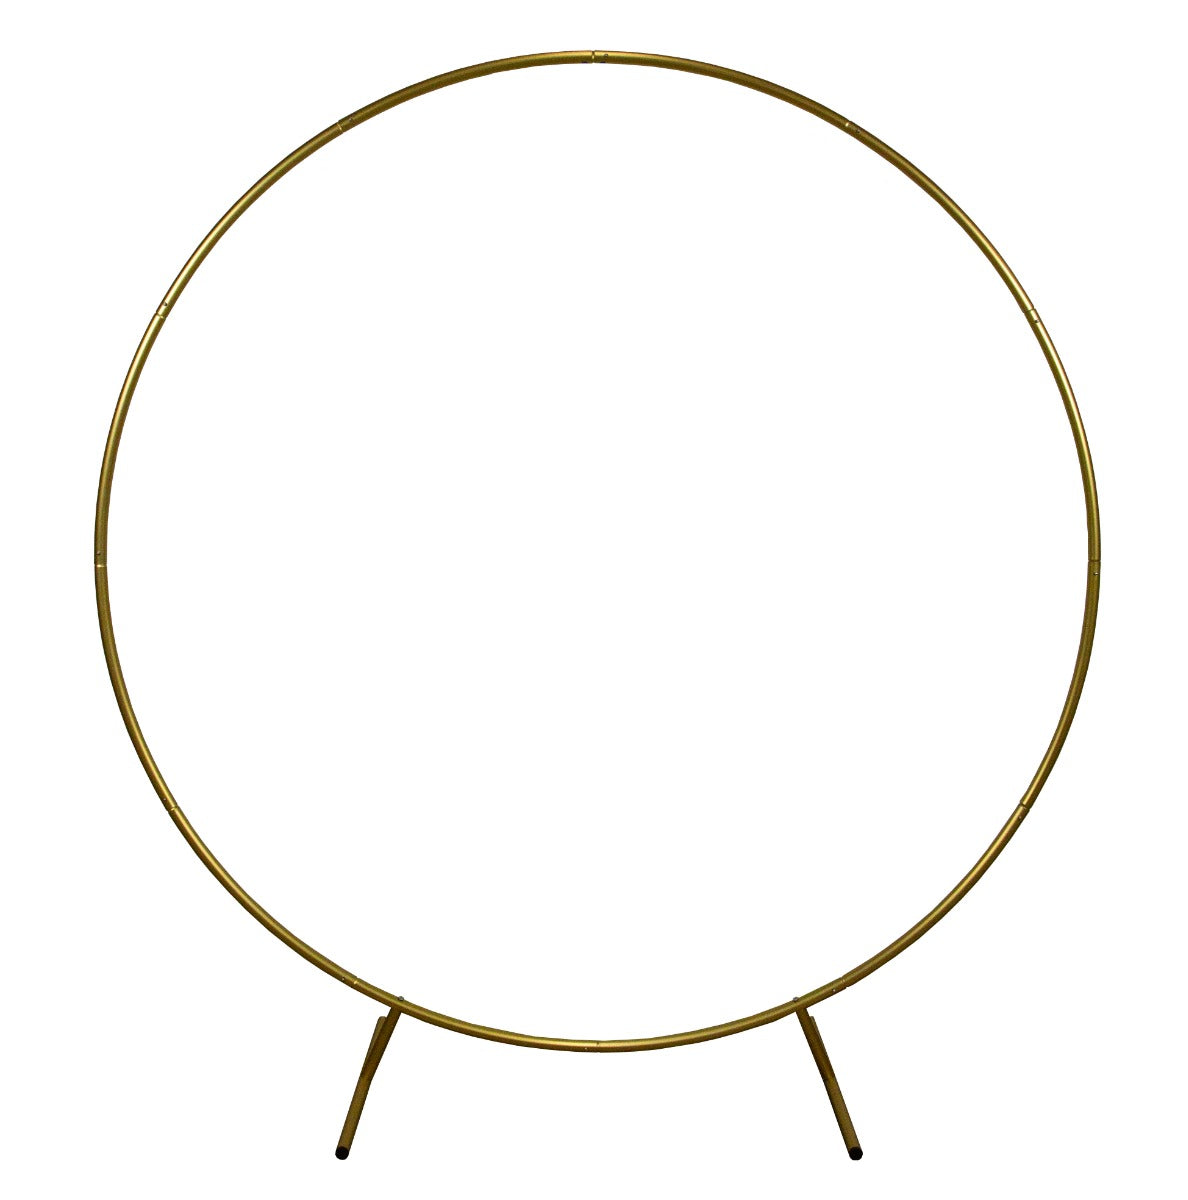 Décoration de Mariage - Combo Arche Circulaire Dorée & 1 Saule Pleureur Lumineux 180cm Blanc Chaud